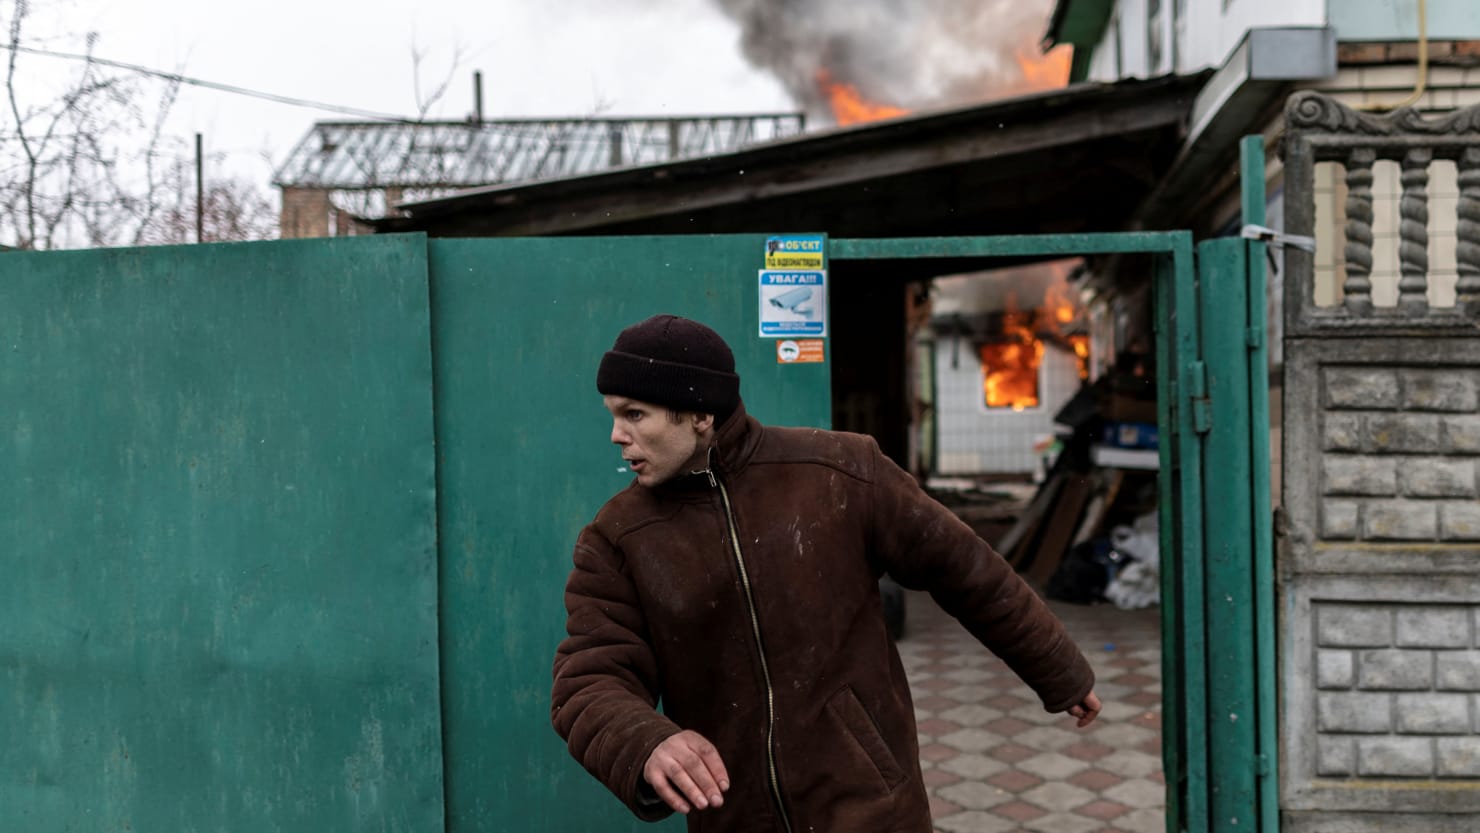 Rusia acusa infundadamente a Ucrania de construir una ‘bomba sucia’ mientras Europa teme una guerra nuclear